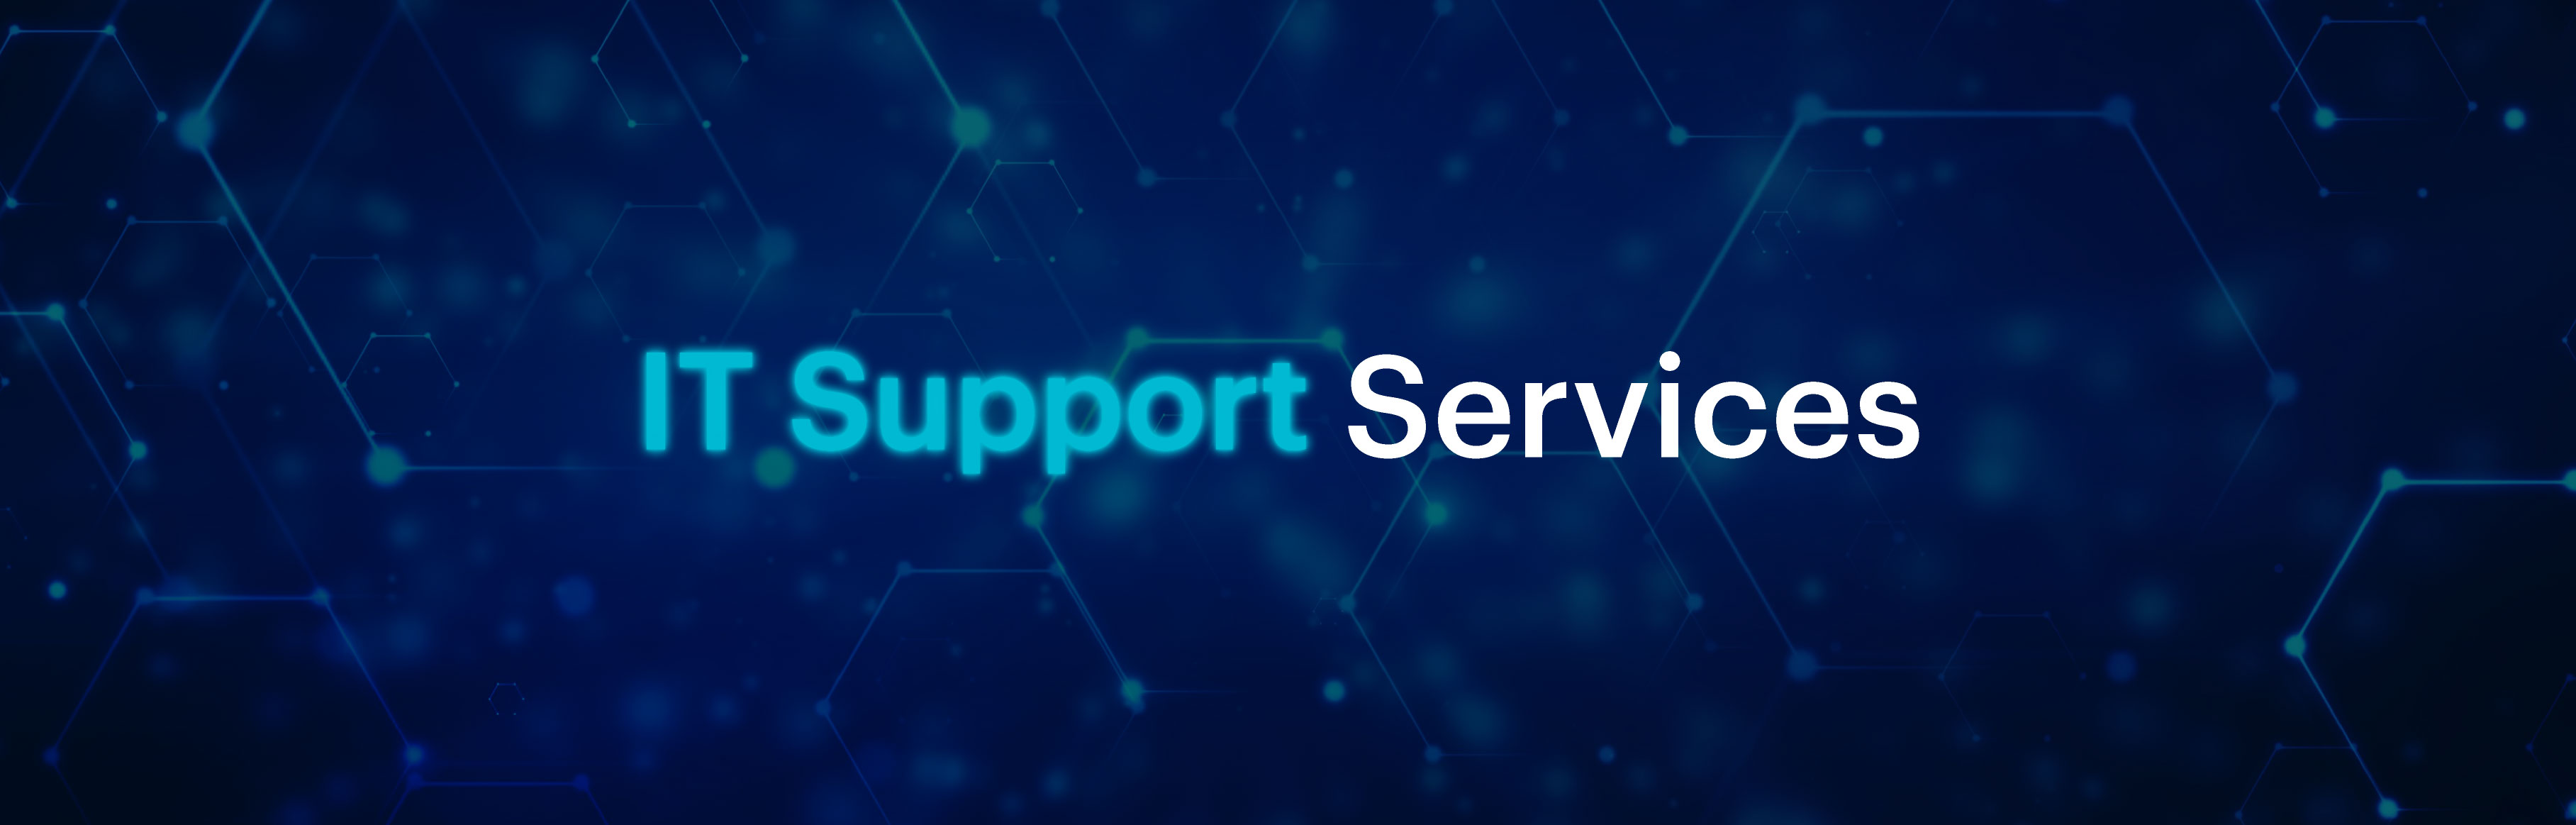 IT Support Services Bild